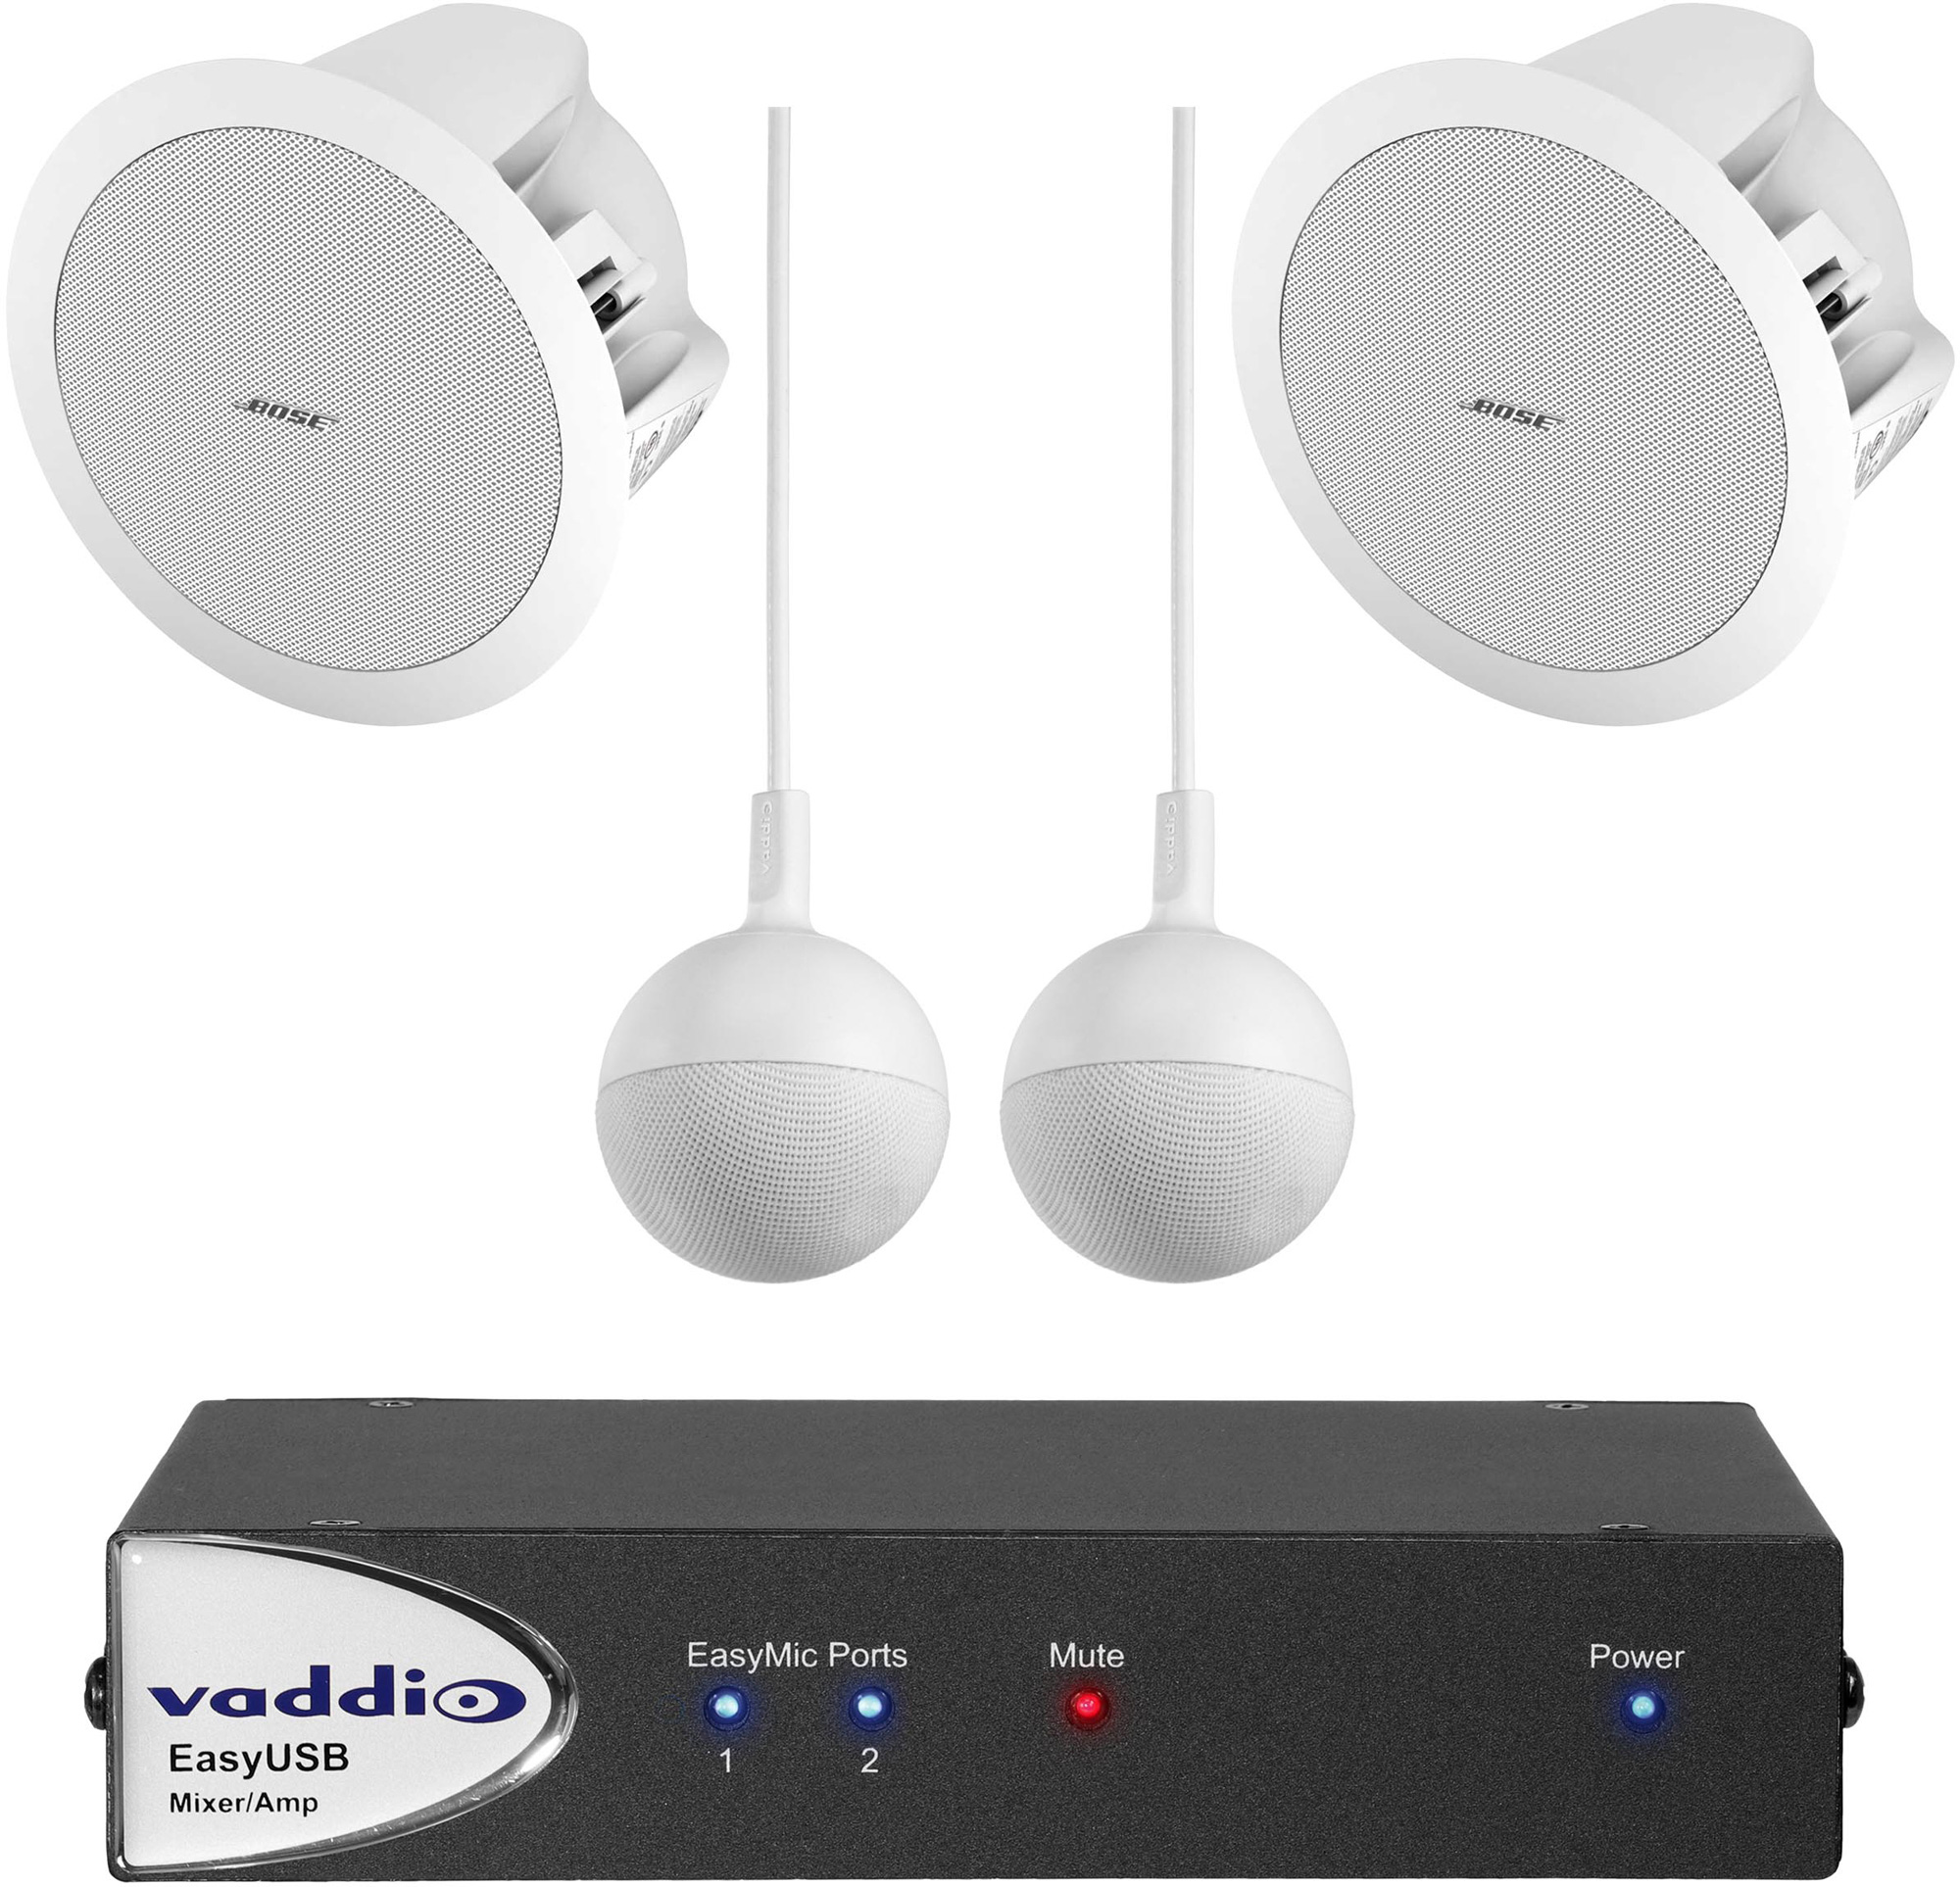 Atticus Diagnose Rød Vaddio 999-86400-000 EasyTALK USB Audio Bundle - One EasyUSB Mixer/Amp -  Two White CeilingMICs - Two White Bose DS-16s